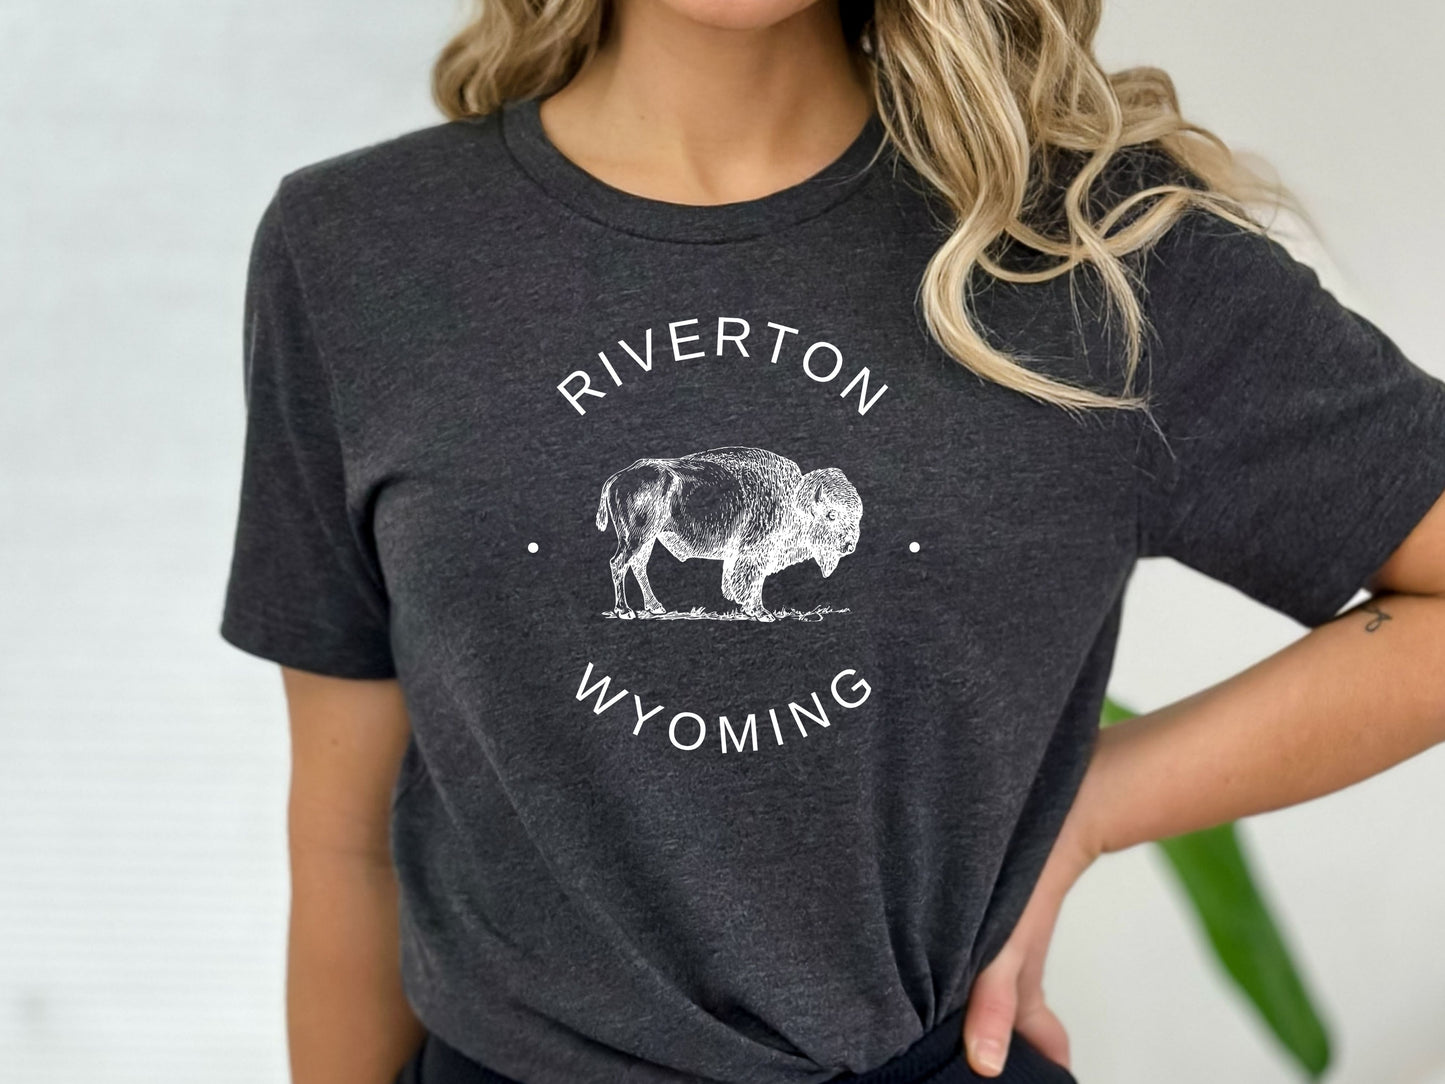 Riverton Women Wyoming T-Shirt